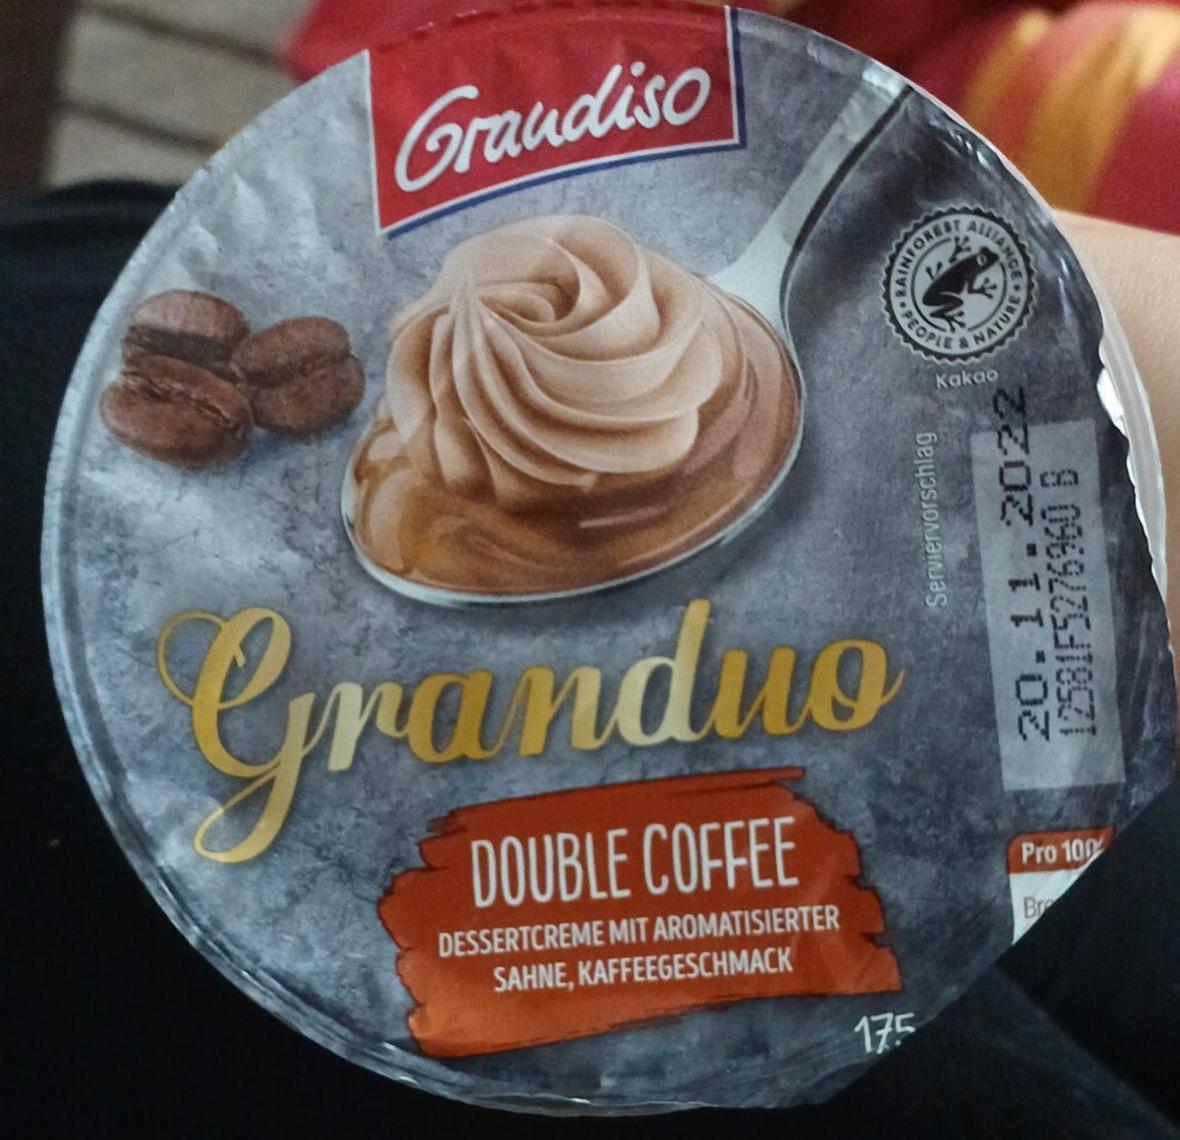 Фото - Десерт Granduo Double Coffee Graudiso